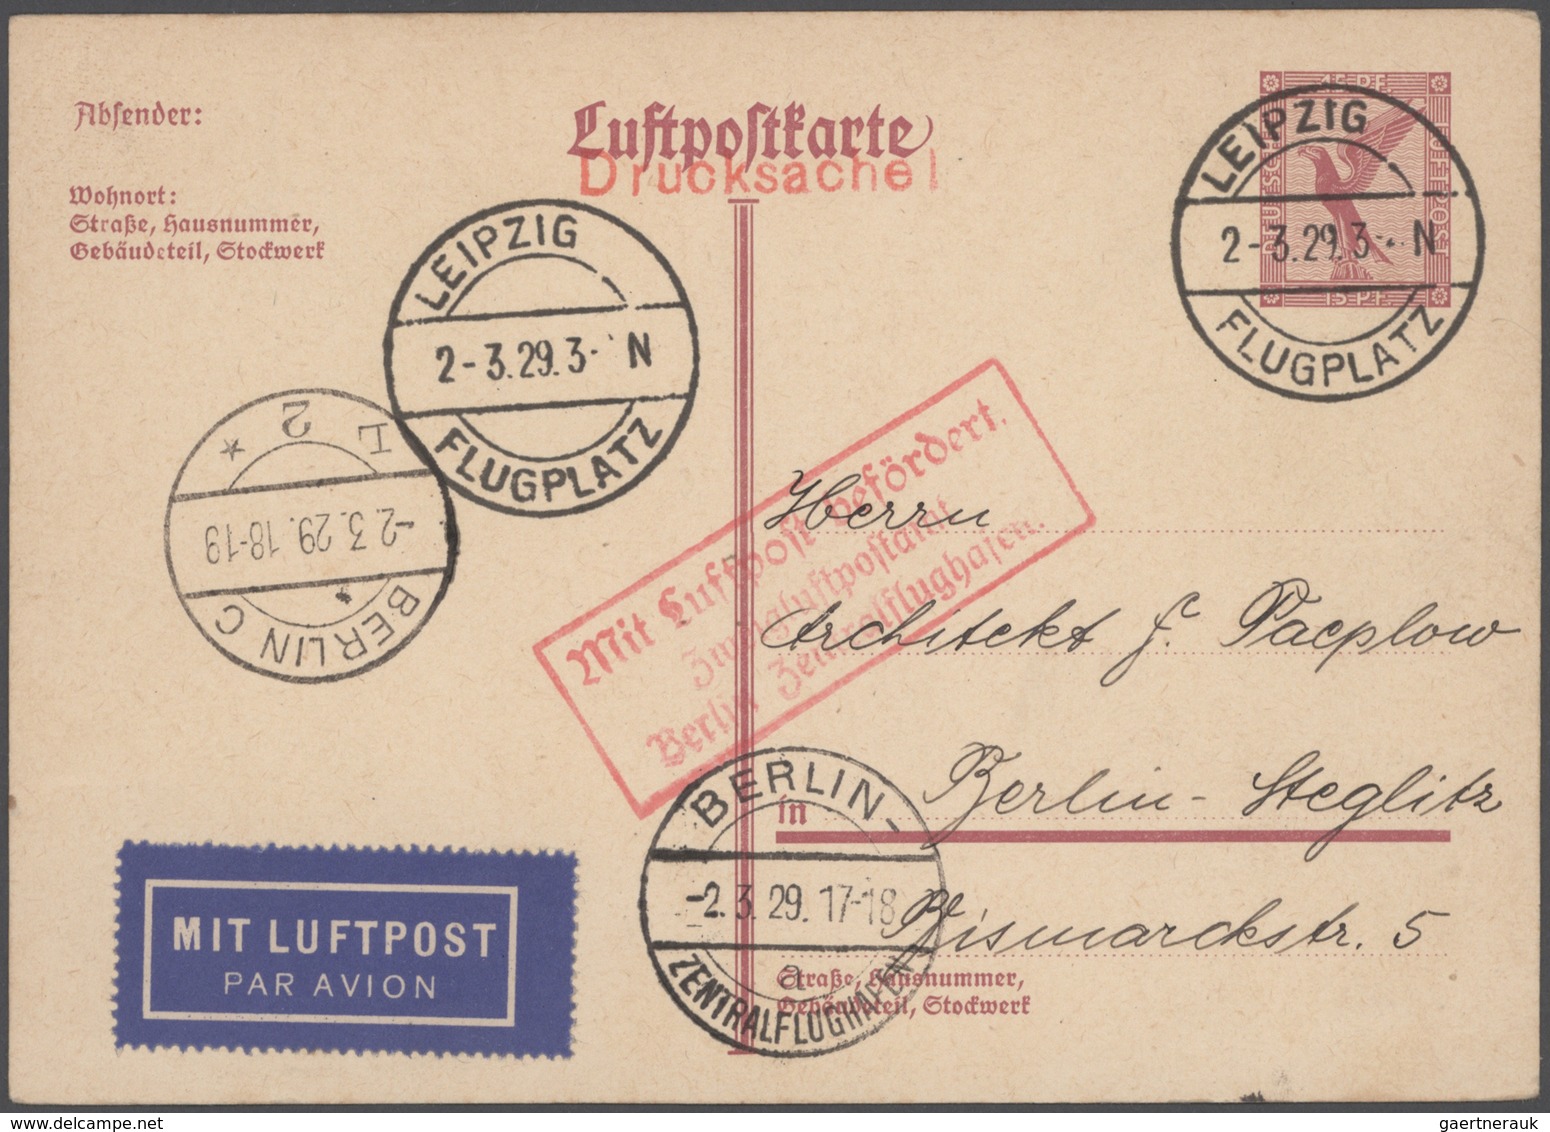 Deutsches Reich - Ganzsachen: 1873/1944, Spezialsammlung der gebrauchten Ganzsachenpostkarten von P